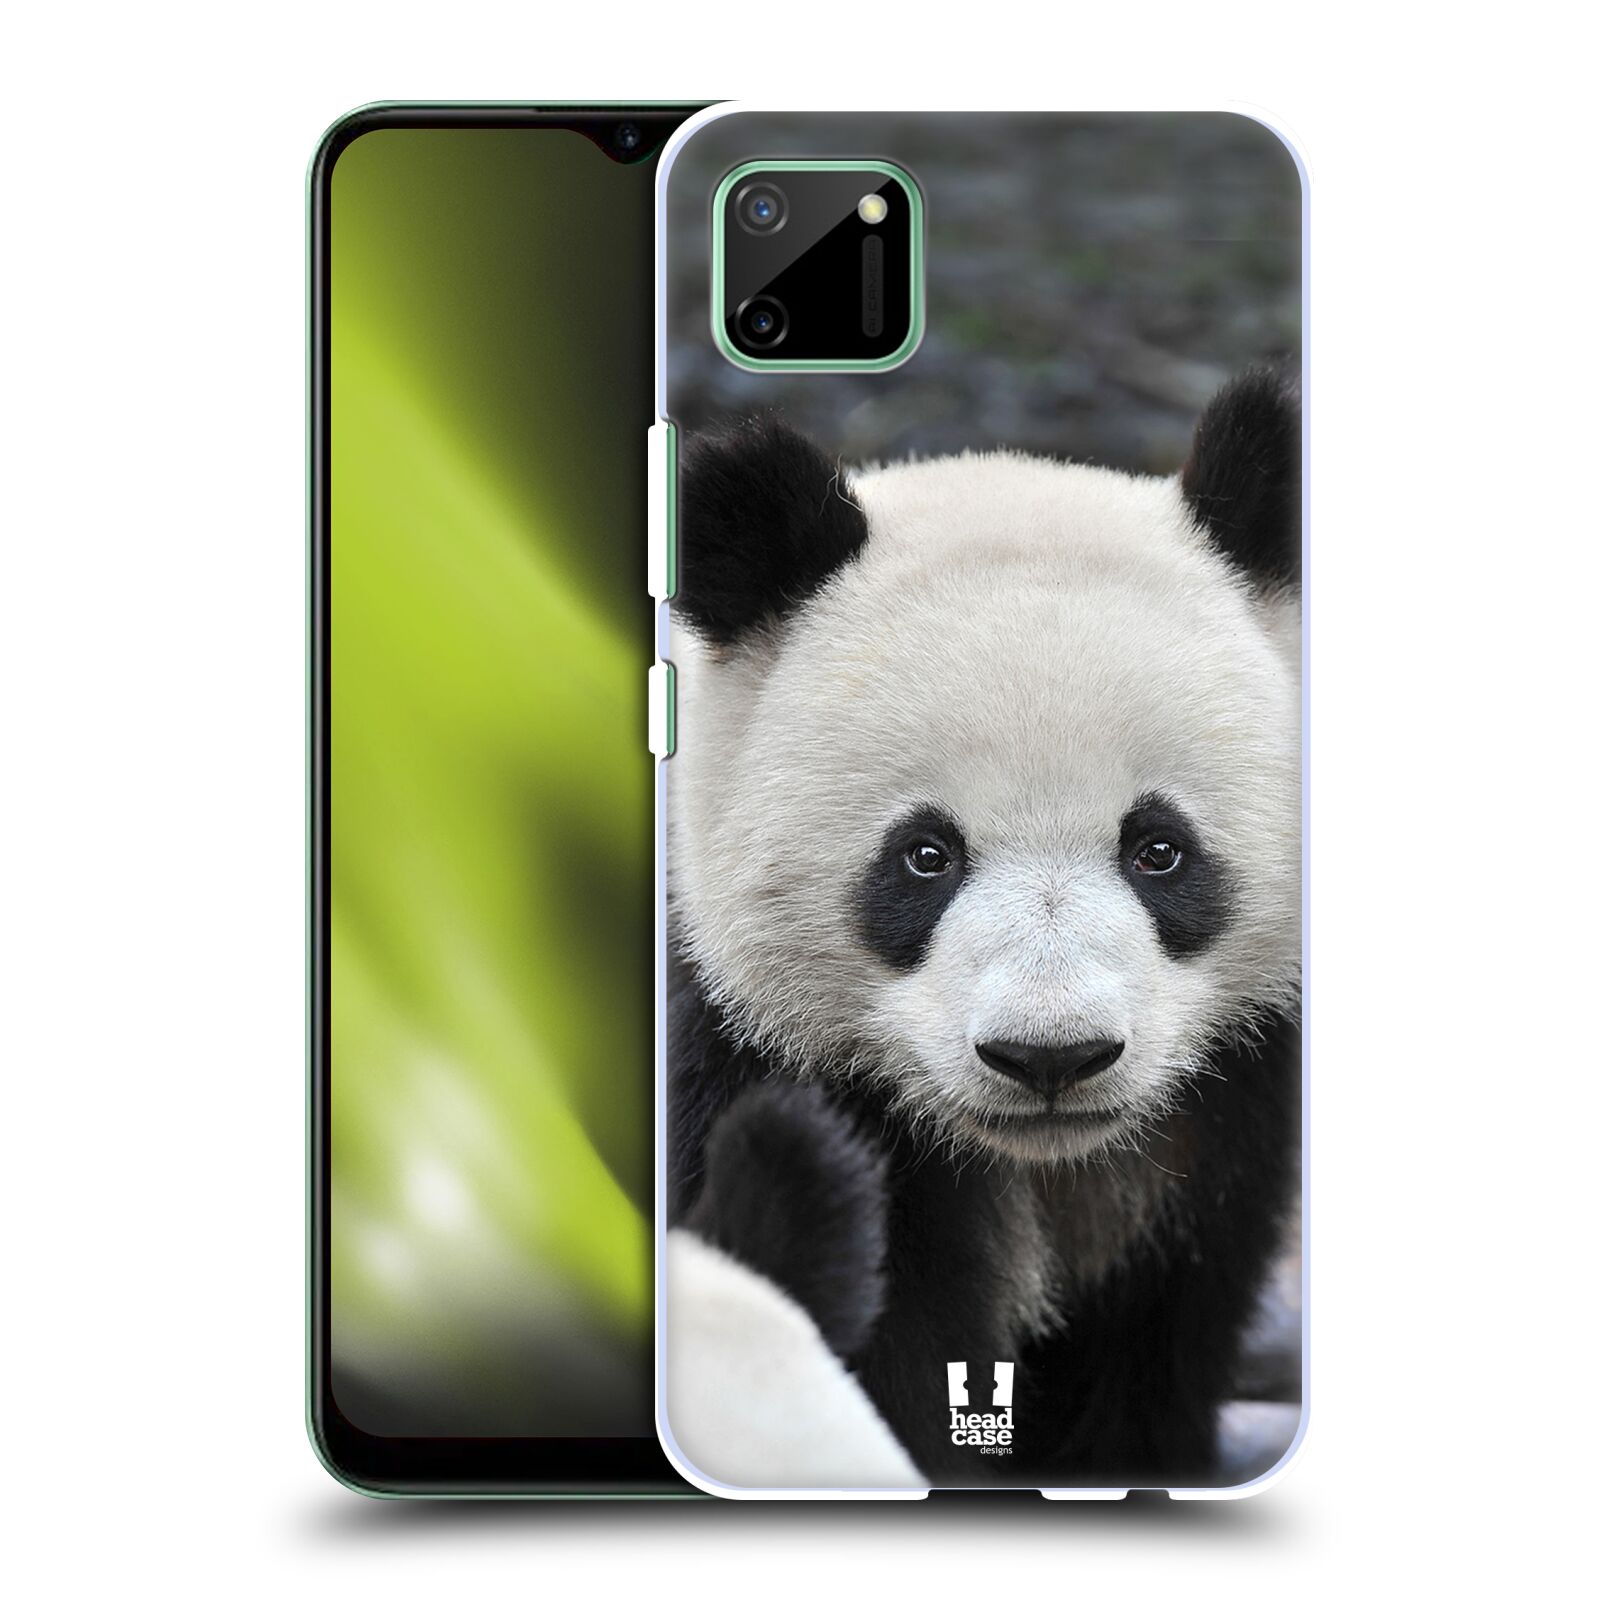 Zadní obal pro mobil Realme C11 - HEAD CASE - Svět zvířat medvěd panda